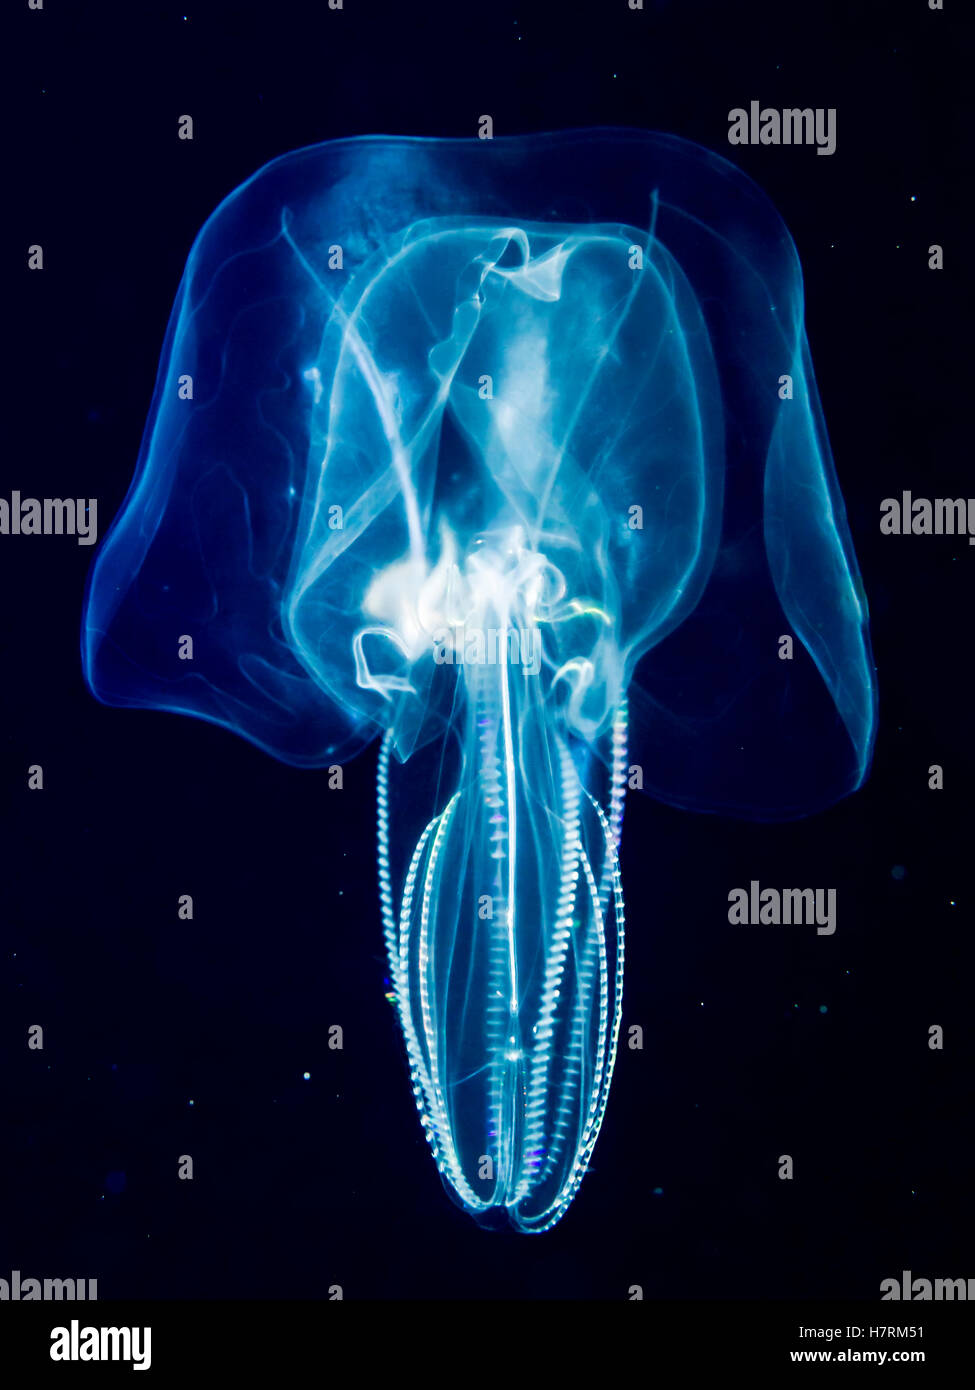 Pettine Bolinopsid jelly (ctenophore) che è stata fotografata a diverse miglia al largo di un'isola hawaiana durante una fossa settica scuba dive Foto Stock